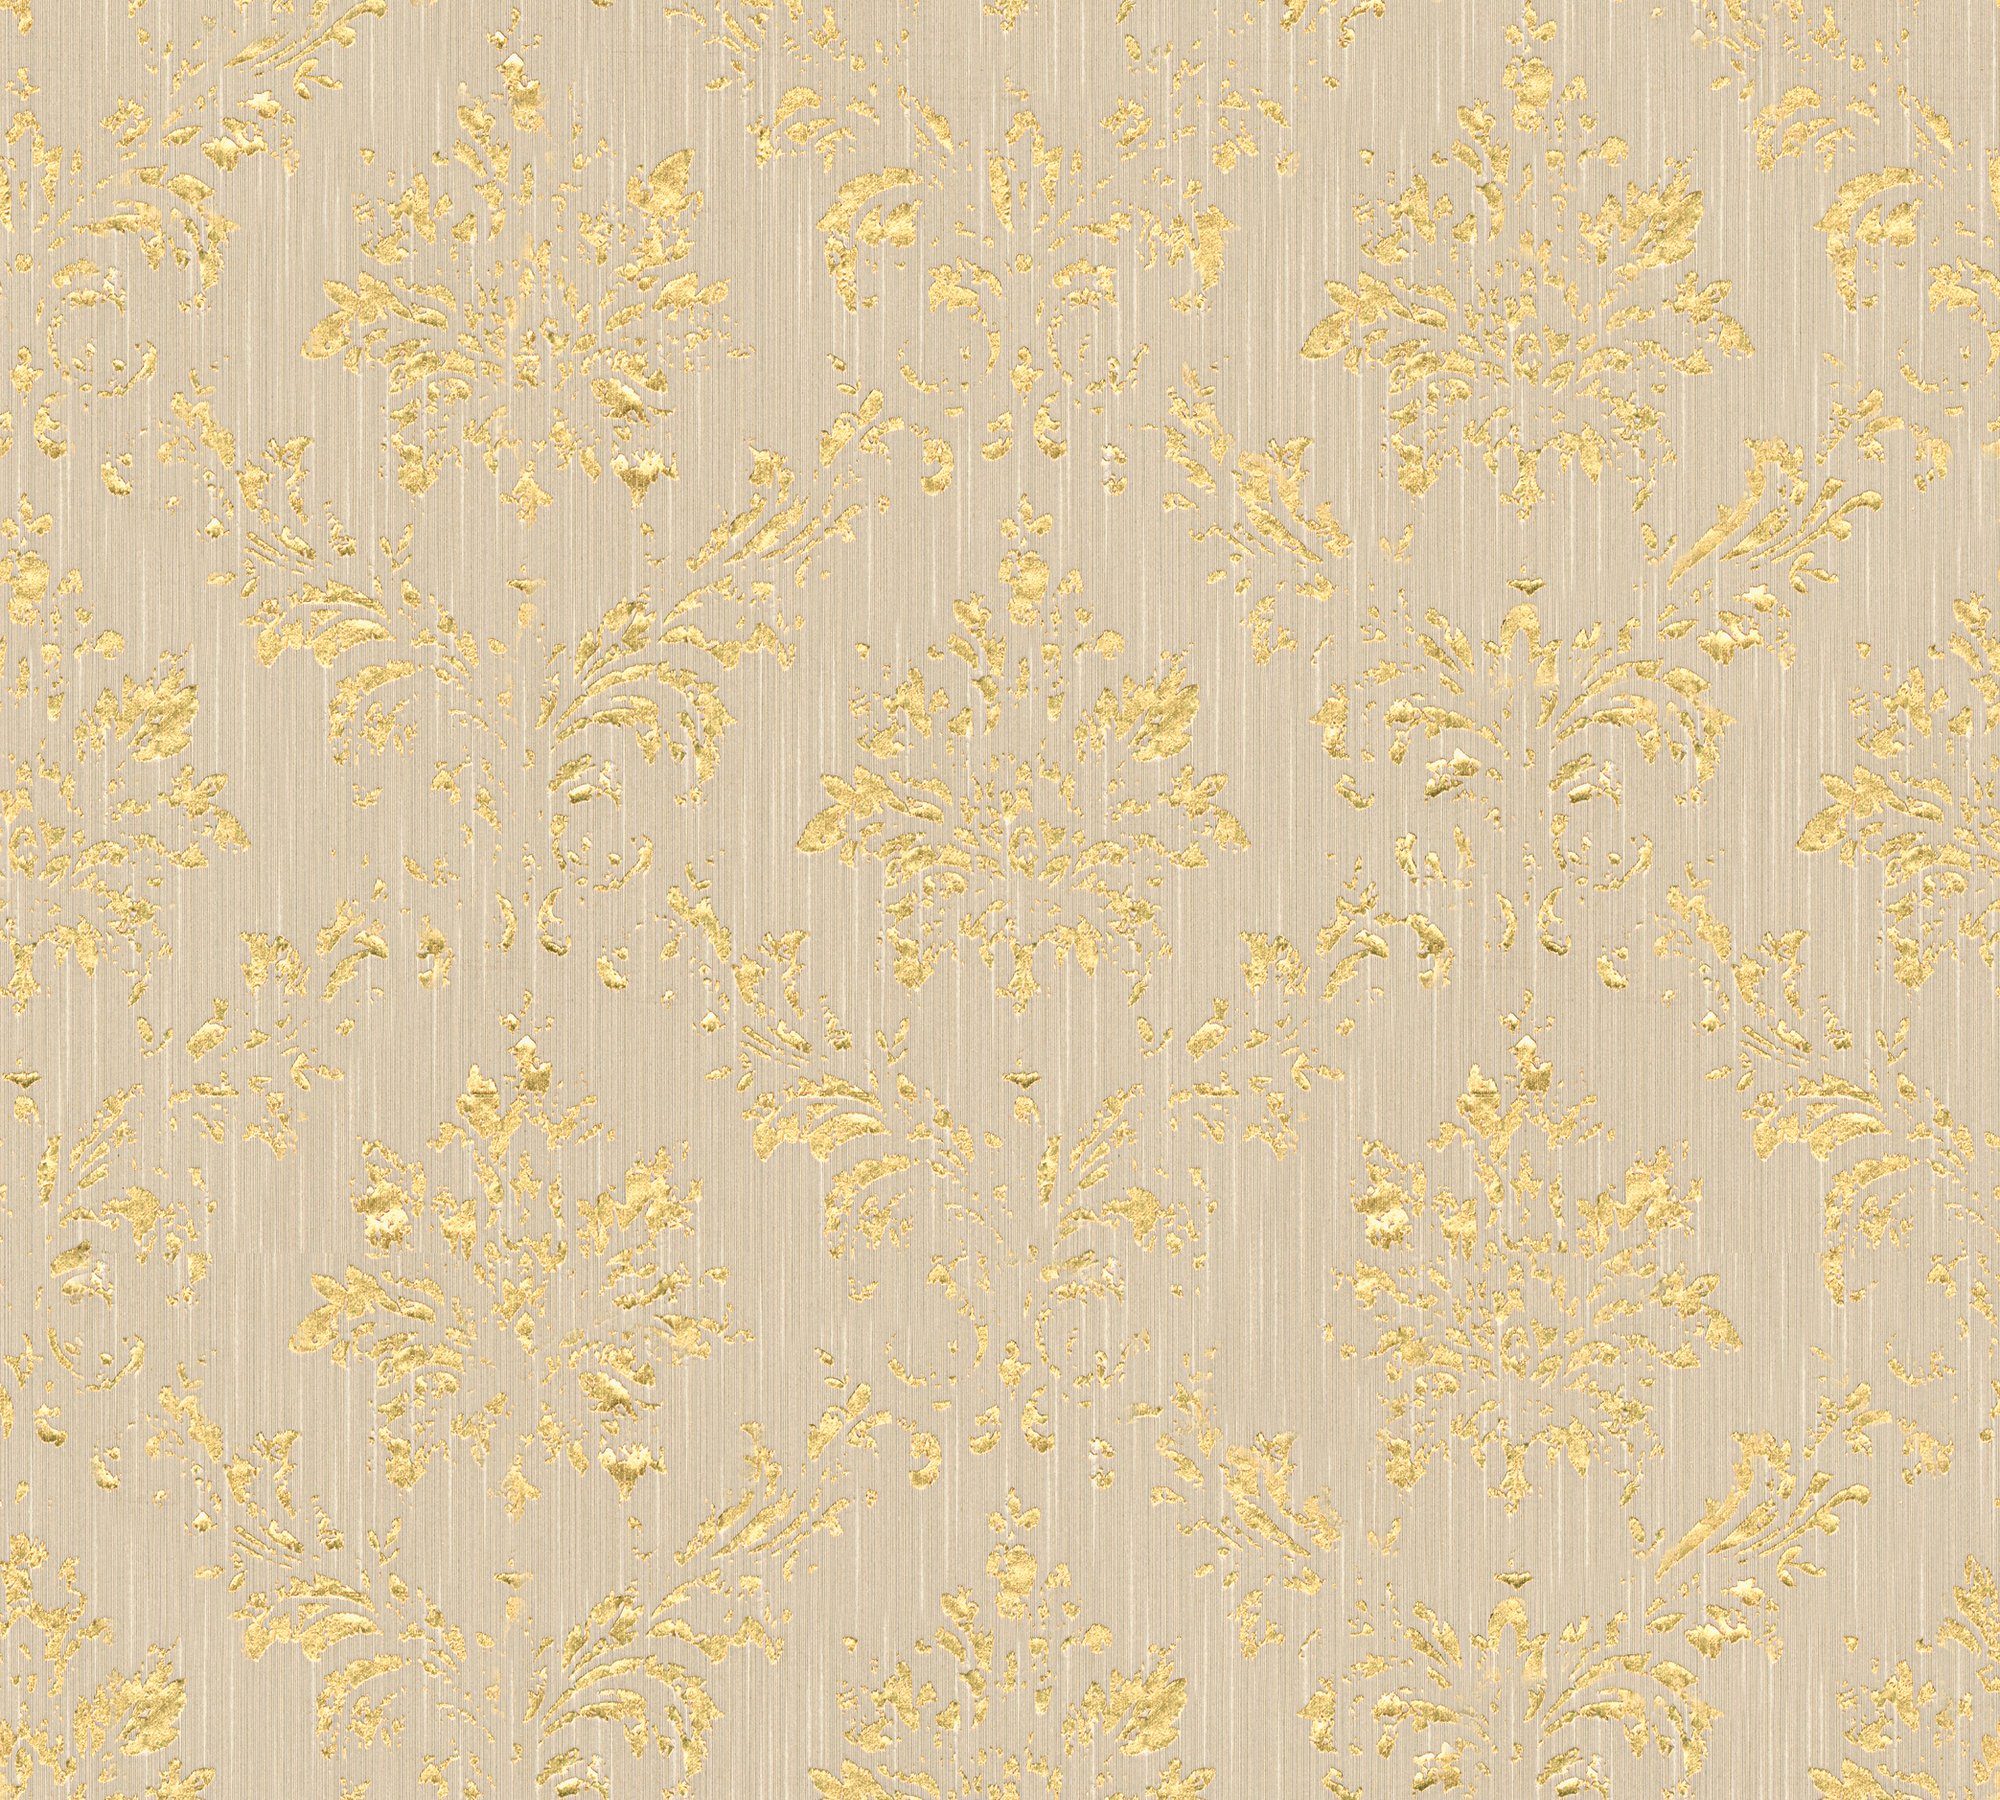 Silk, matt, Tapete Barock Textiltapete Création A.S. Metallic samtig, Paper Barock, Ornament glänzend, beige/gold Architects